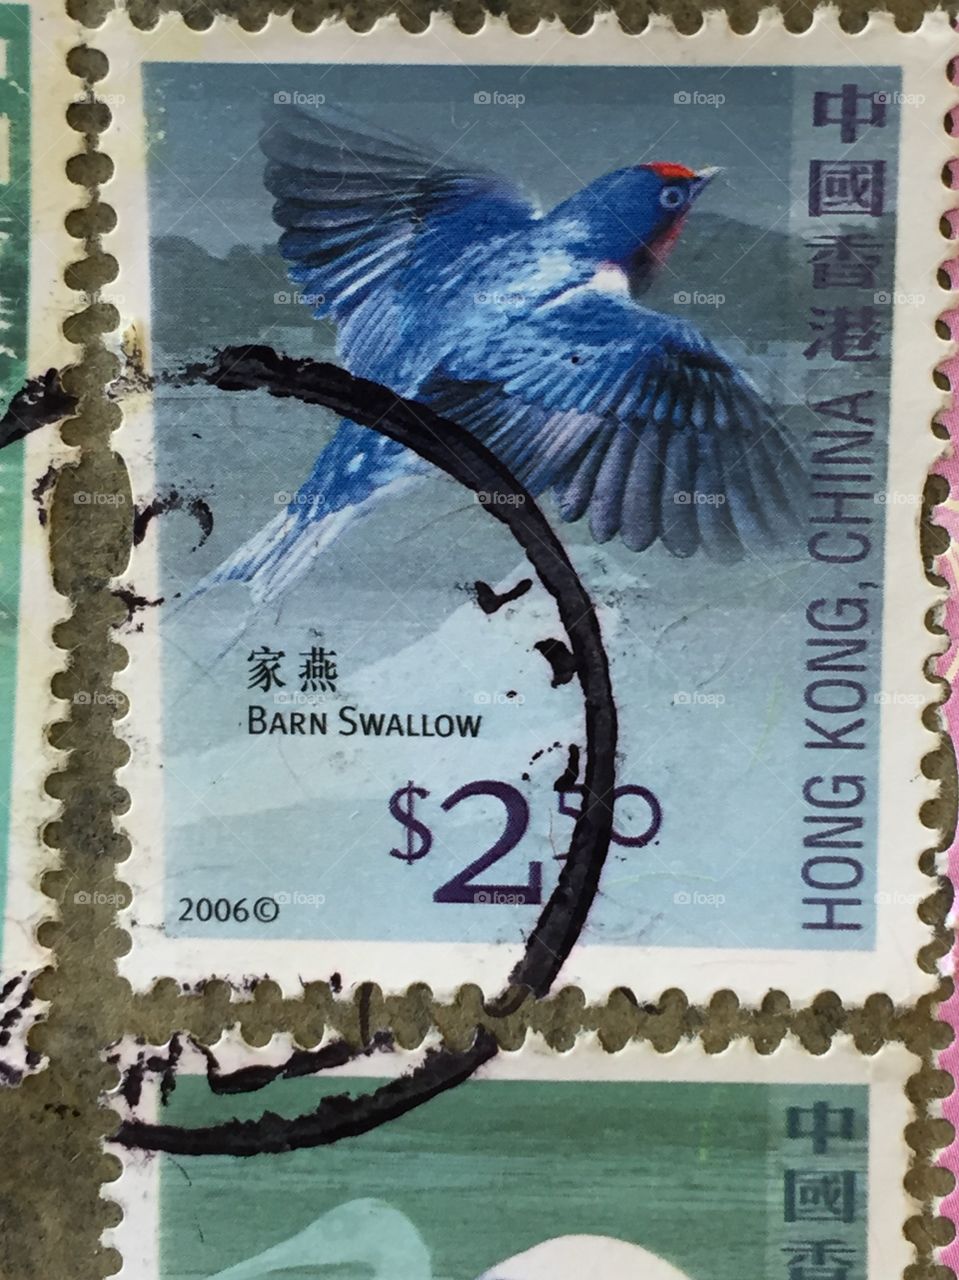 Hong Kong stamp of a blue barn swallow 2006 $2.50